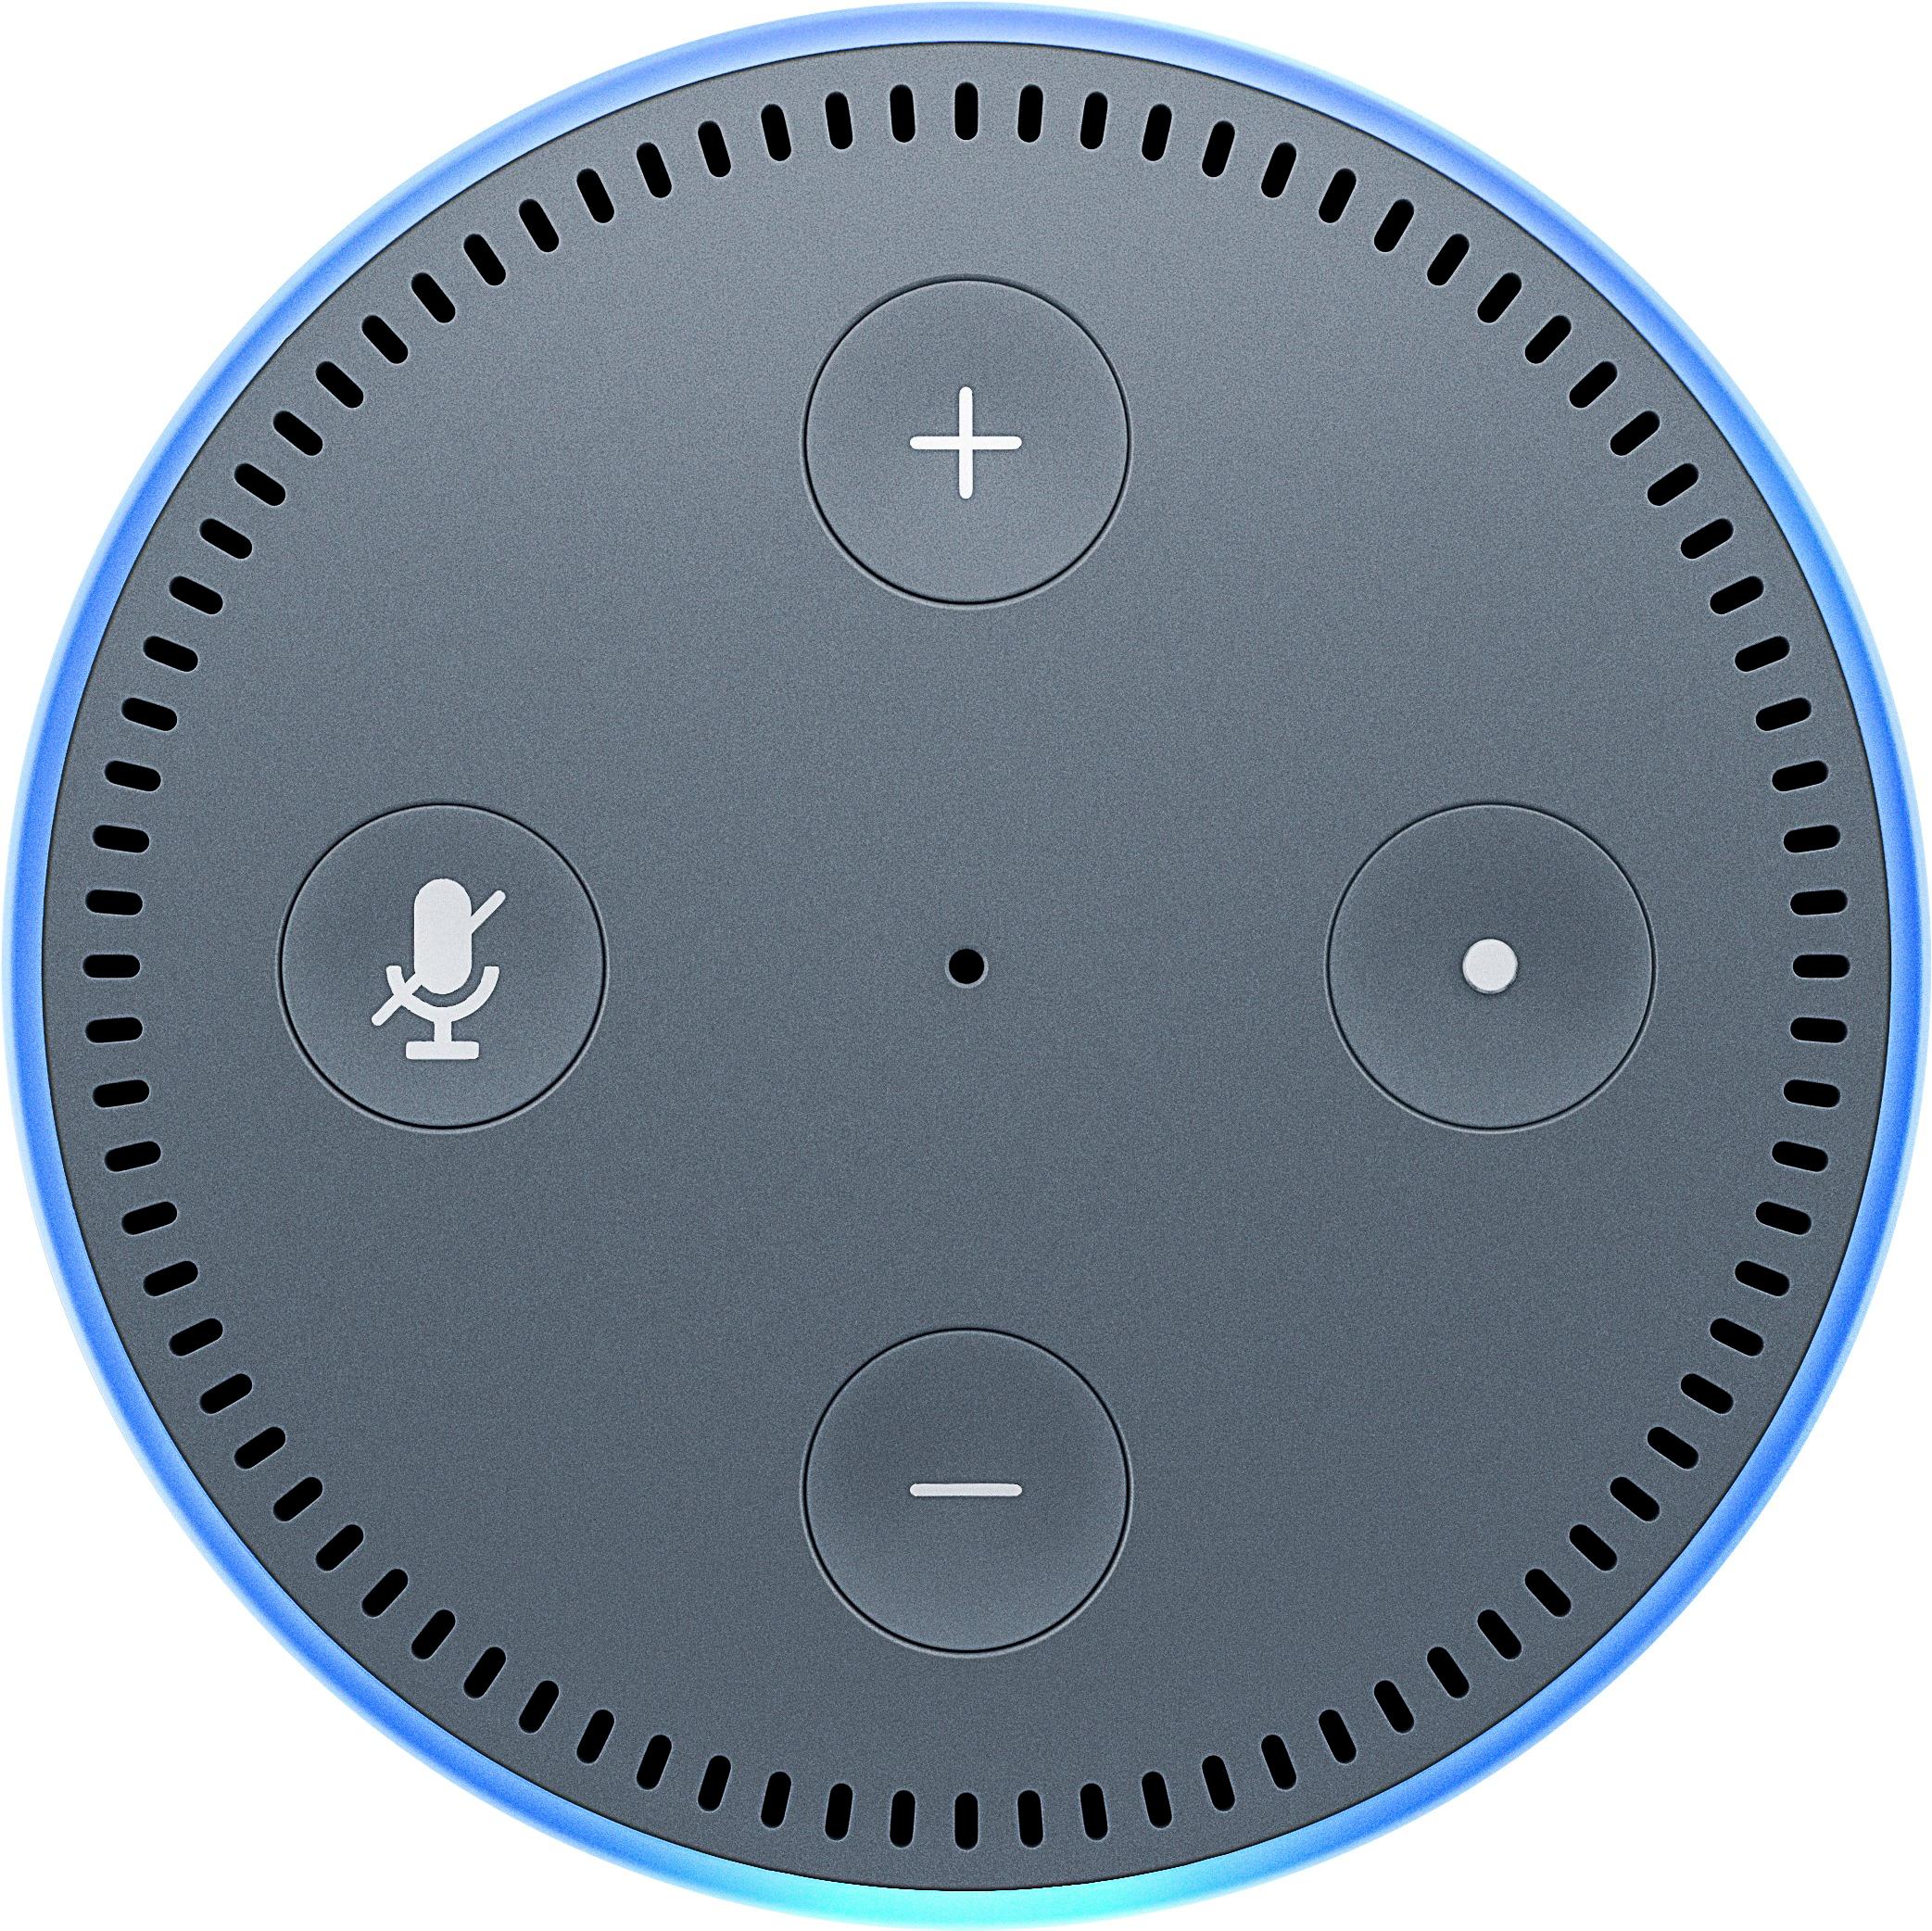 Best Buy:  Echo Dot (2nd generation) Smart Speaker with